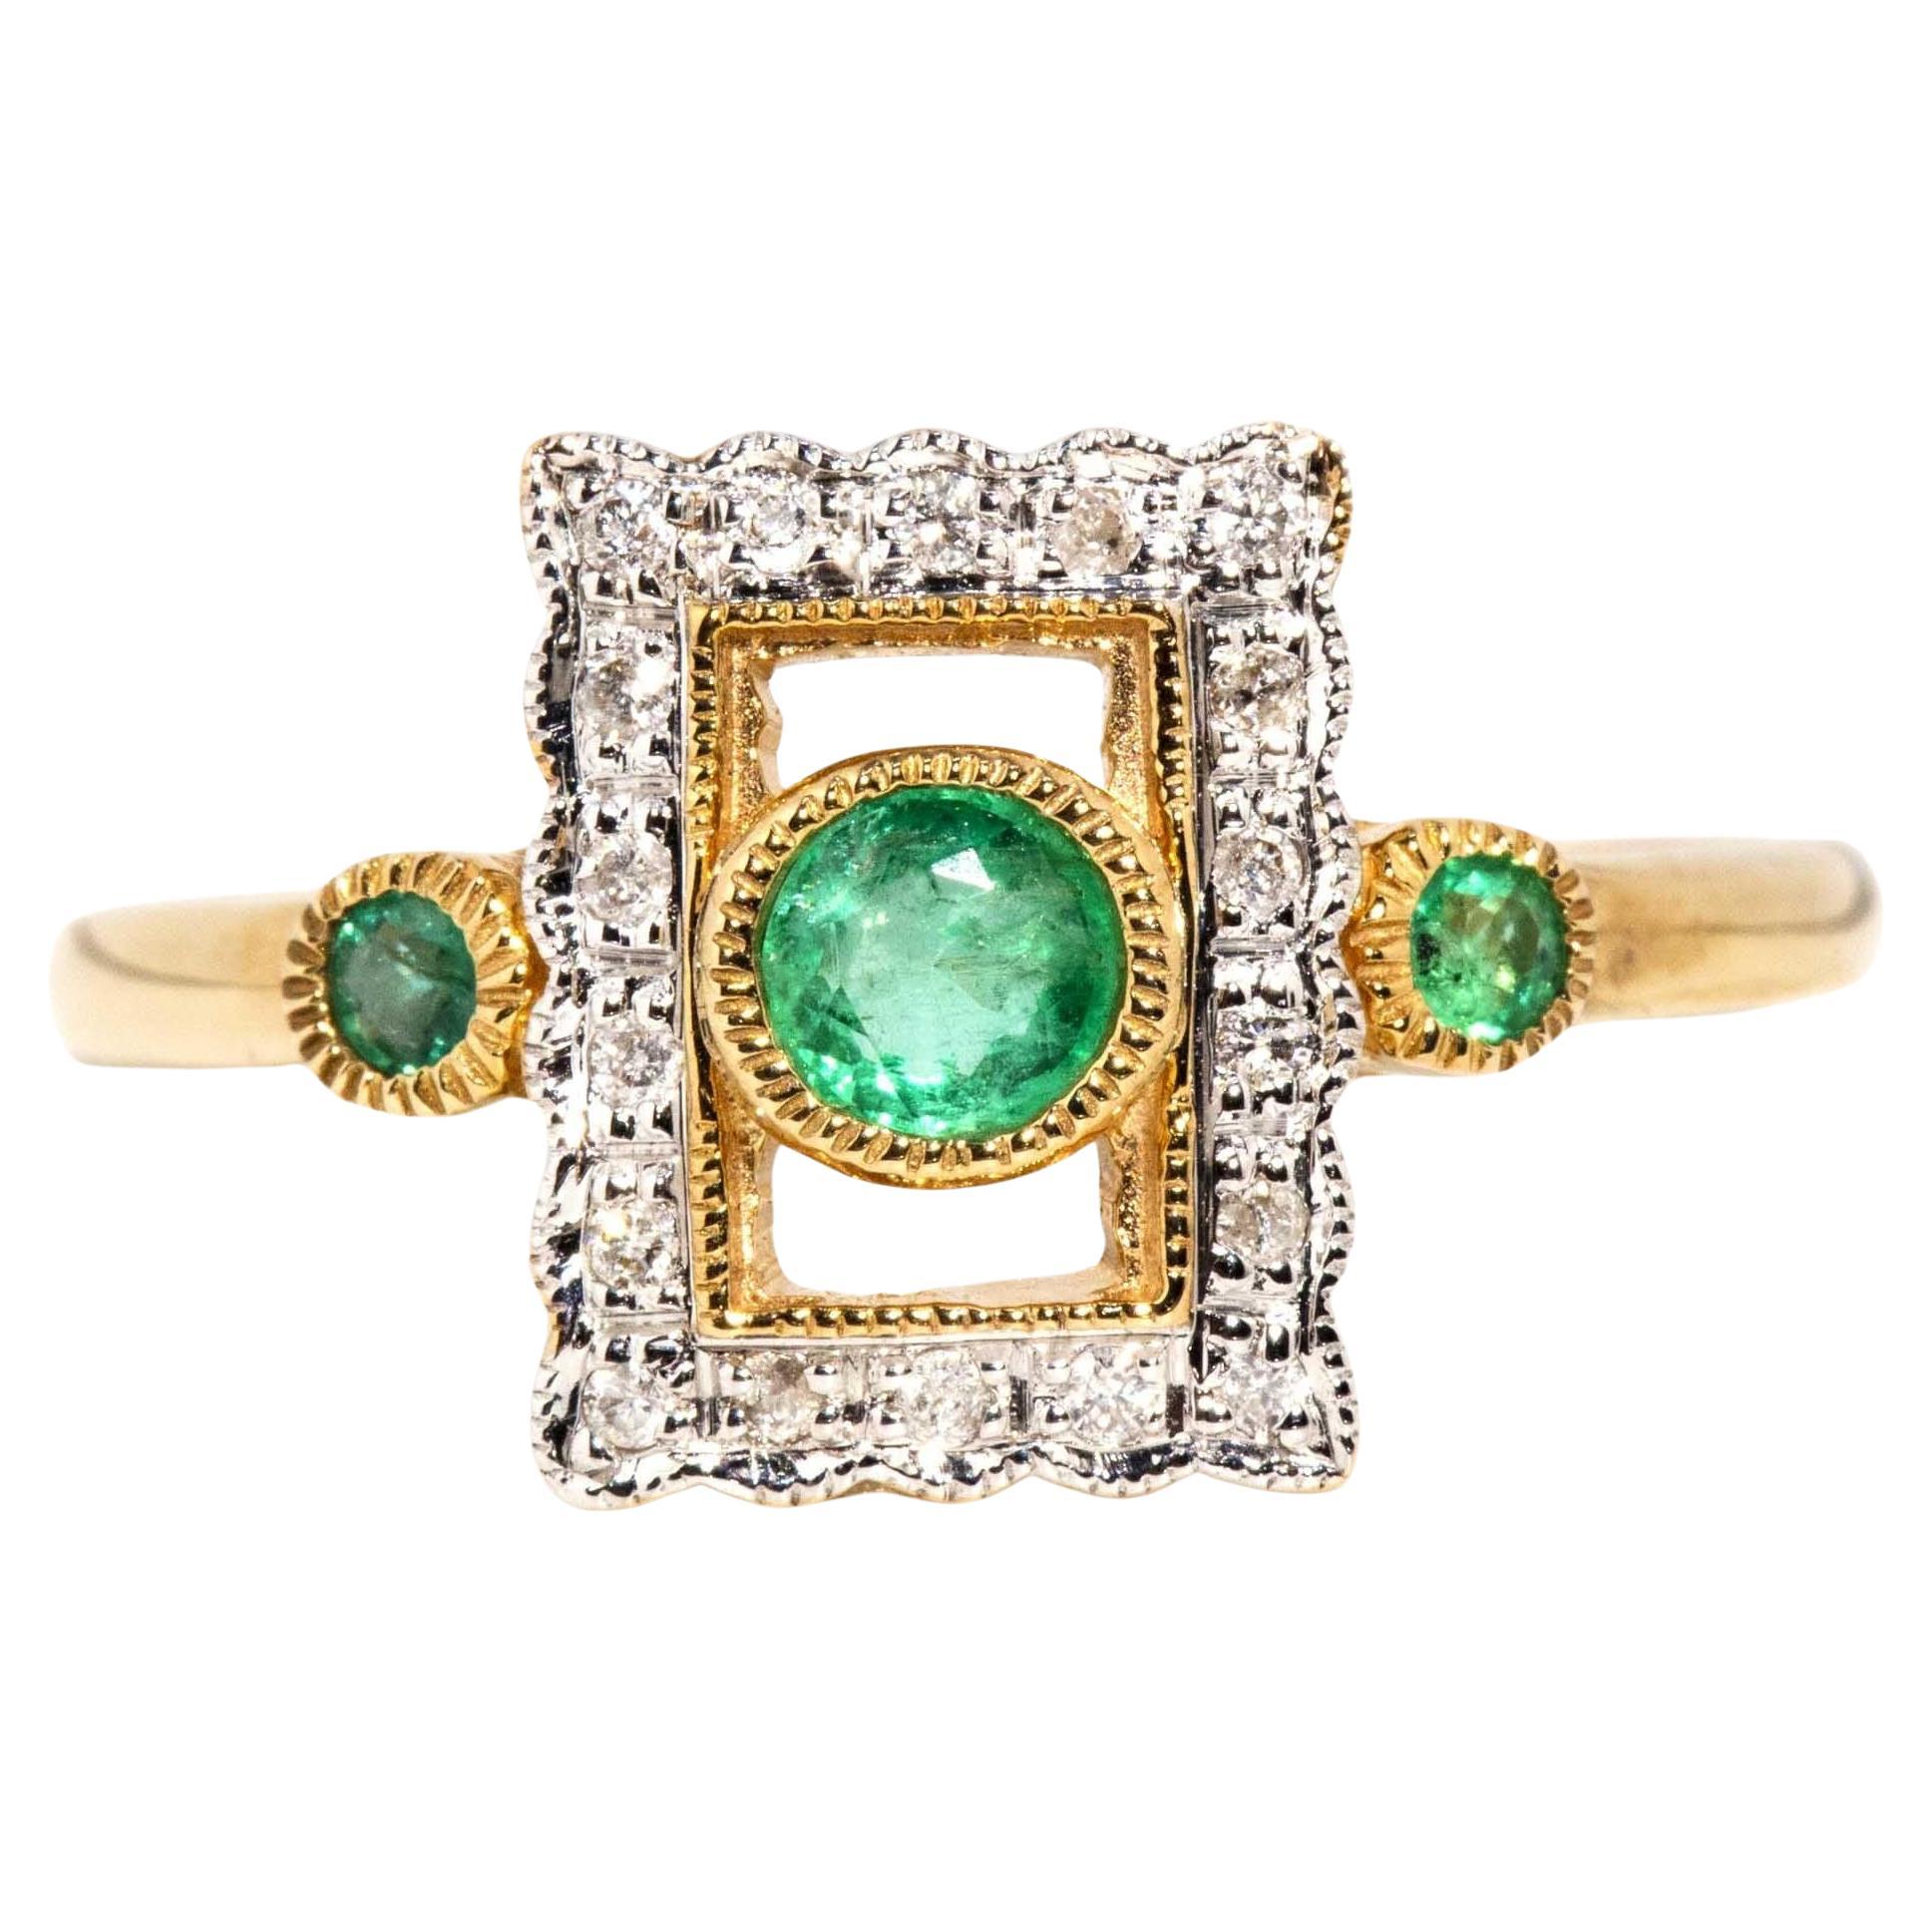 Vintage inspirierter Ring aus 9 Karat Gelbgold mit leuchtend grünem Smaragd und Diamant